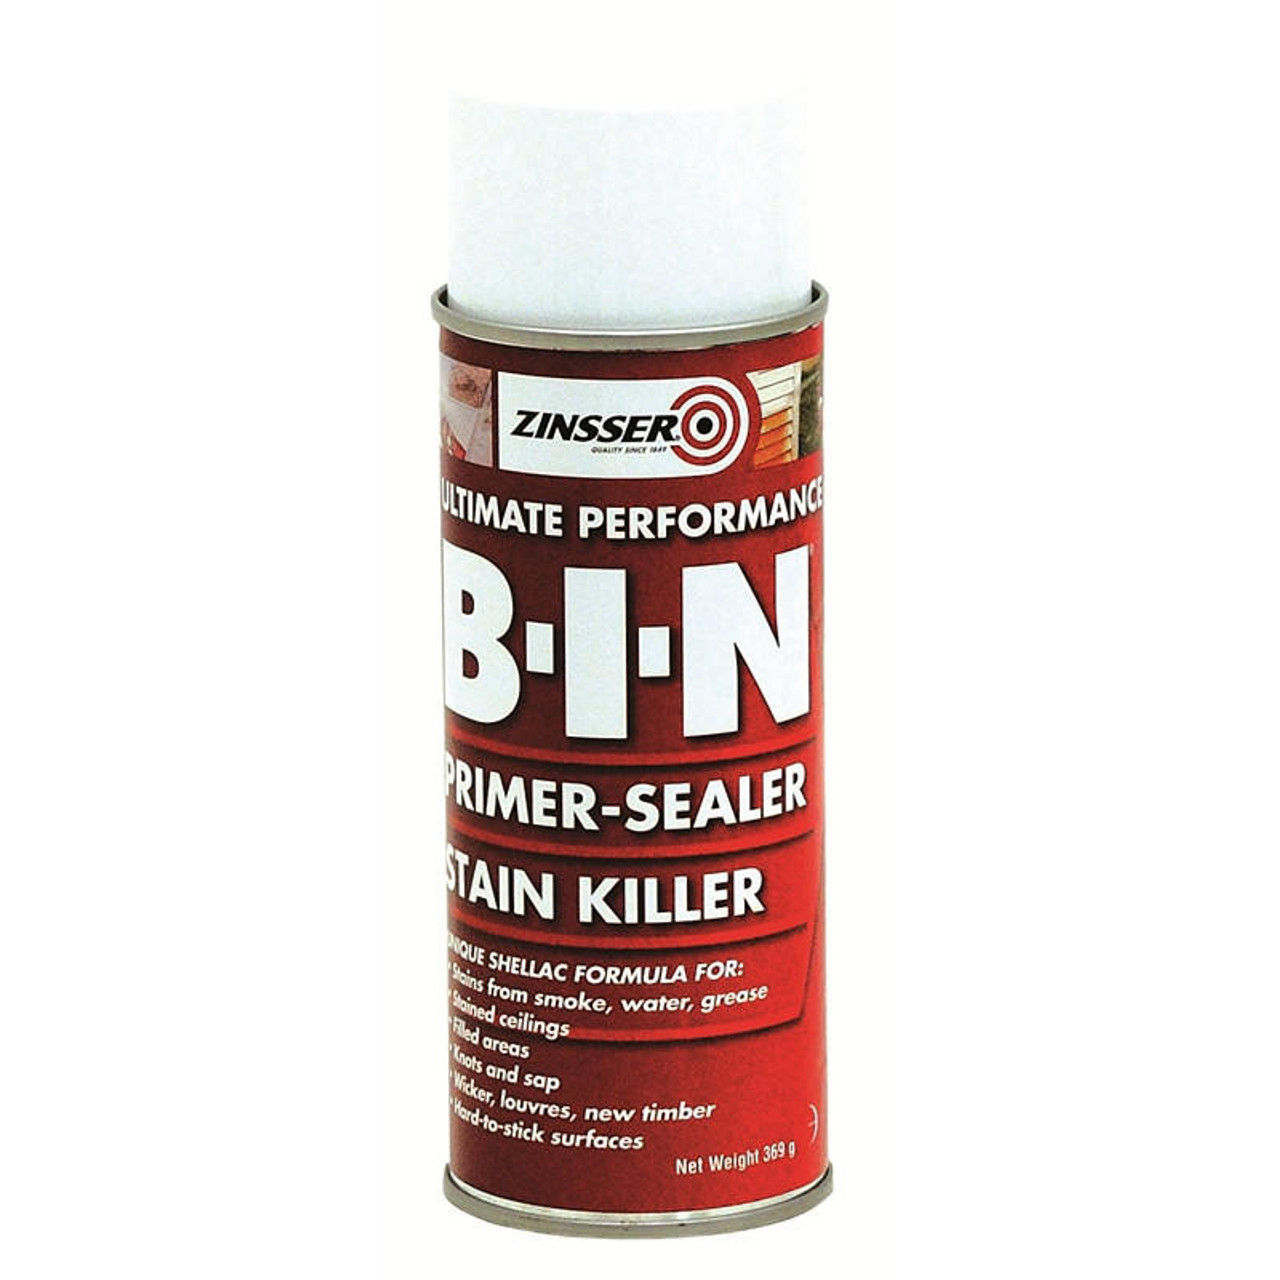 Zinsser BIN 396g Primer Sealer Stain Killer Aerosol